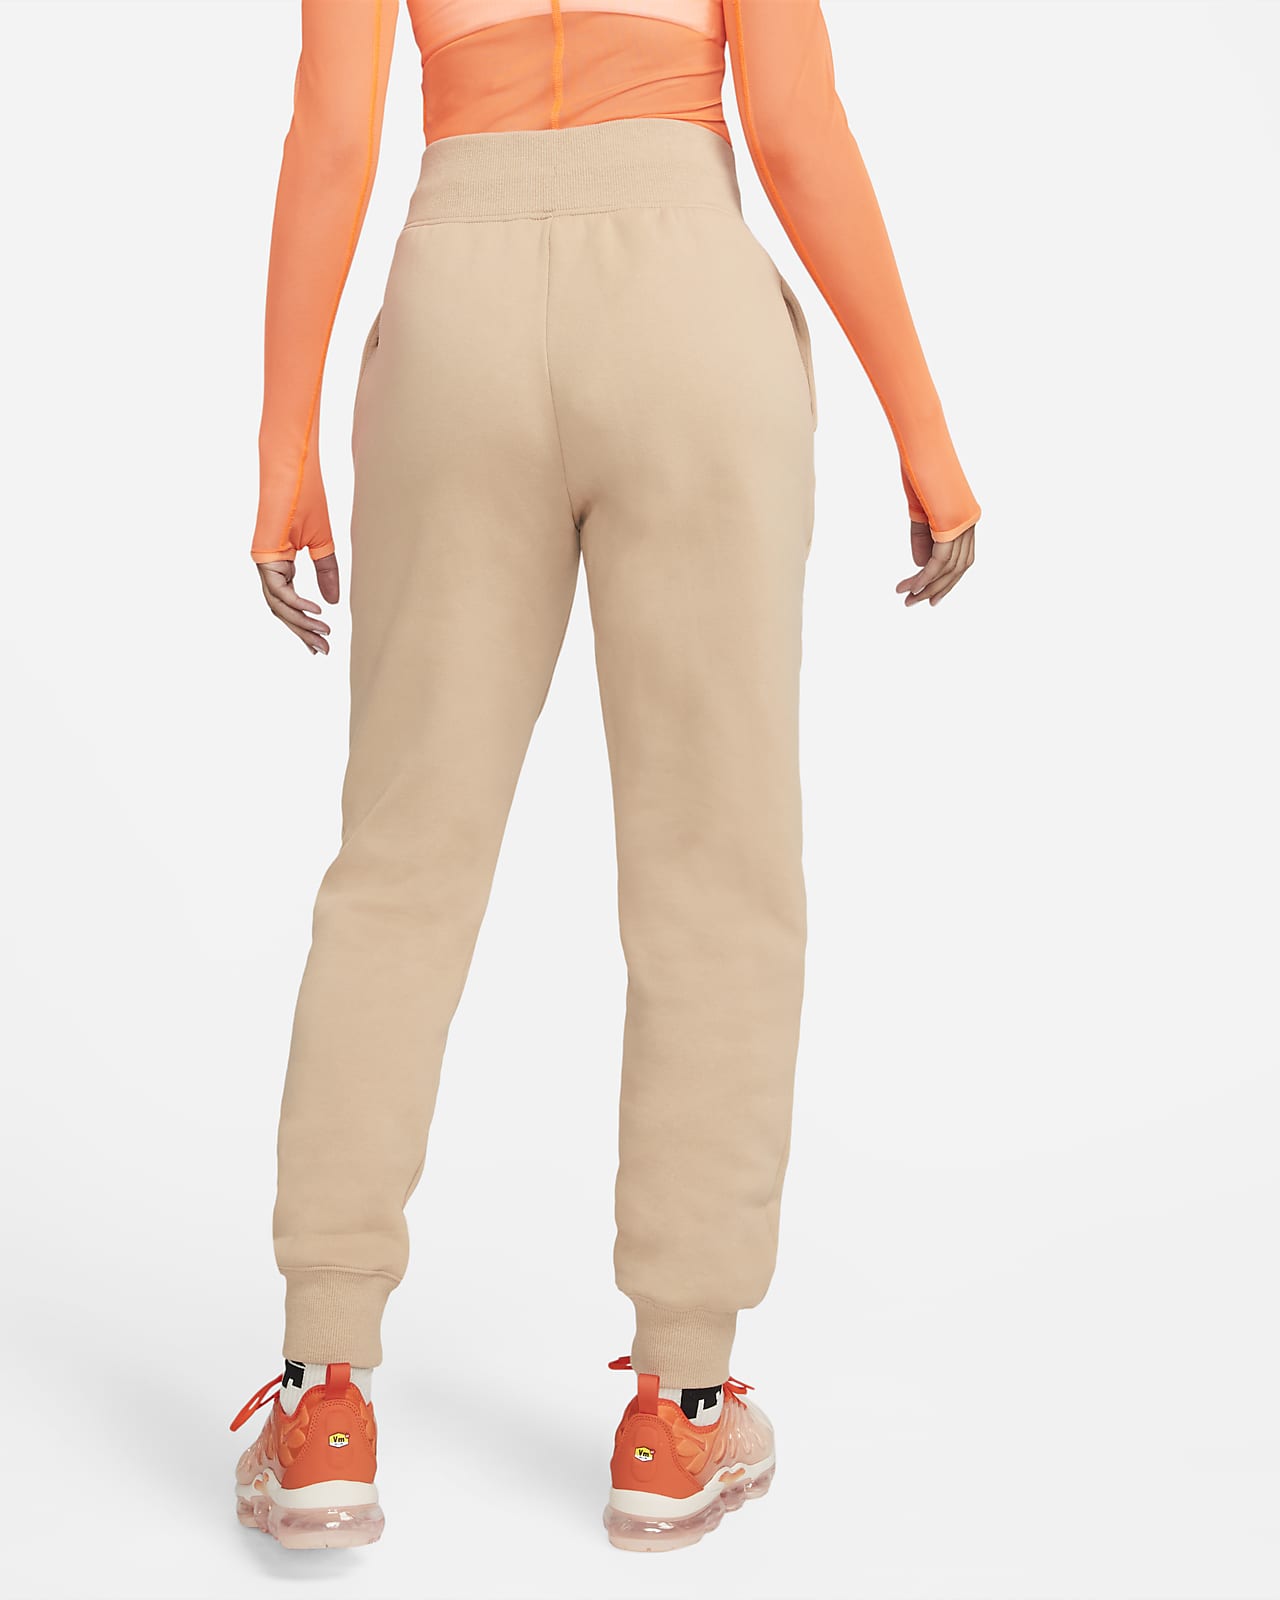 Survêtement taille haute Nike Sportswear Phoenix Fleece pour Femme. Nike LU